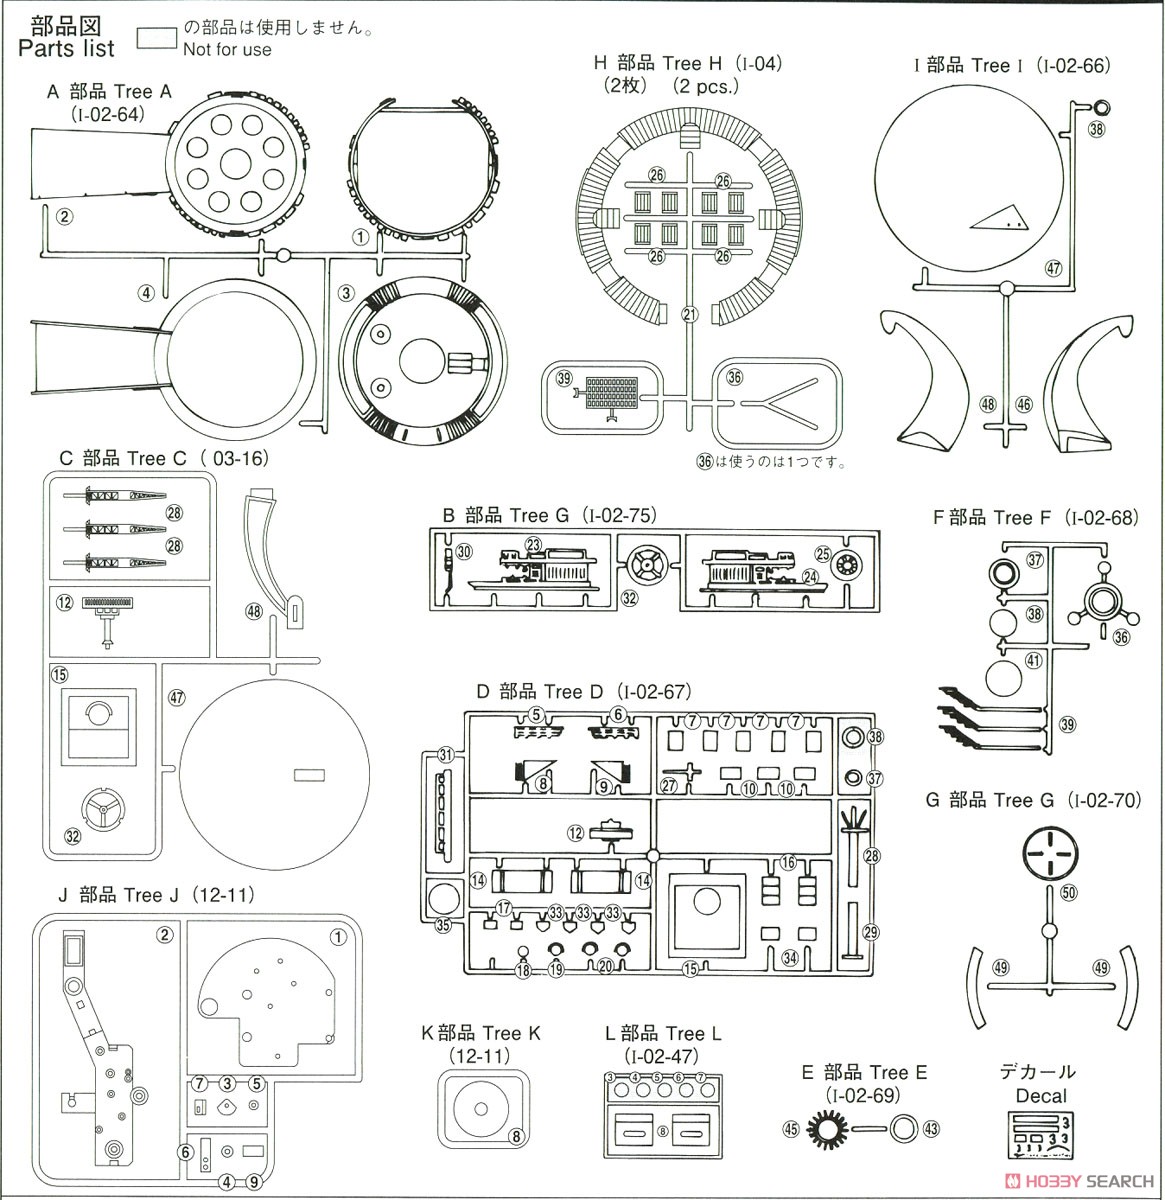 サンダーバード5号&3号 電動モデル (プラモデル) 設計図9